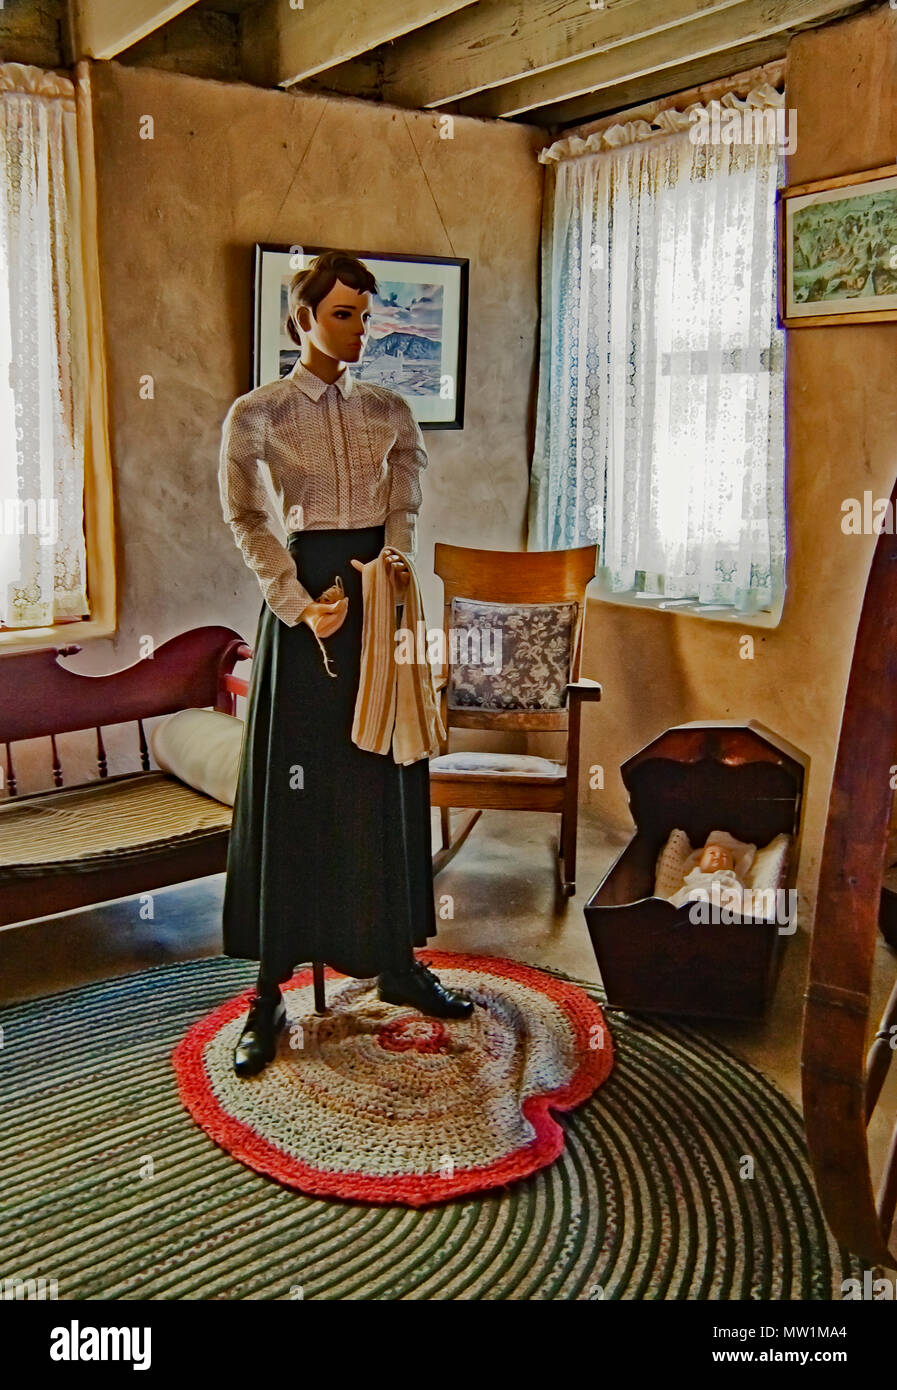 Manichino di donna mormone che illustrano la vita nella casa della vecchia Las Vegas Mormon Fort, il primo insediamento non-nativo di Las Vegas Valley, NV Foto Stock